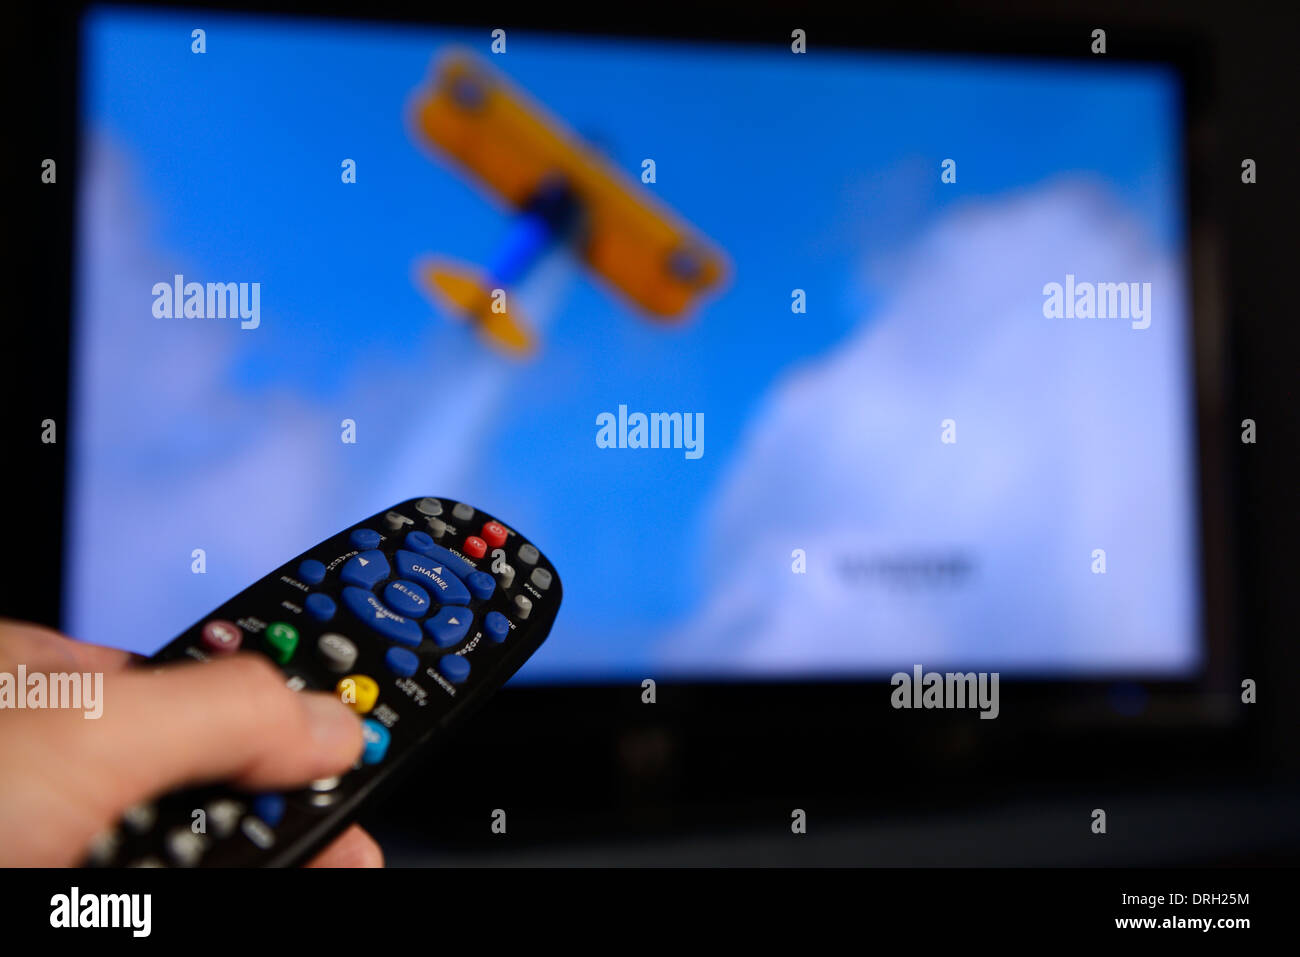 Menschen, die auf eine universelle Fernbedienung auf einem TV-Bildschirm das Programm auf dem Entertainment System zu ändern. Stockfoto